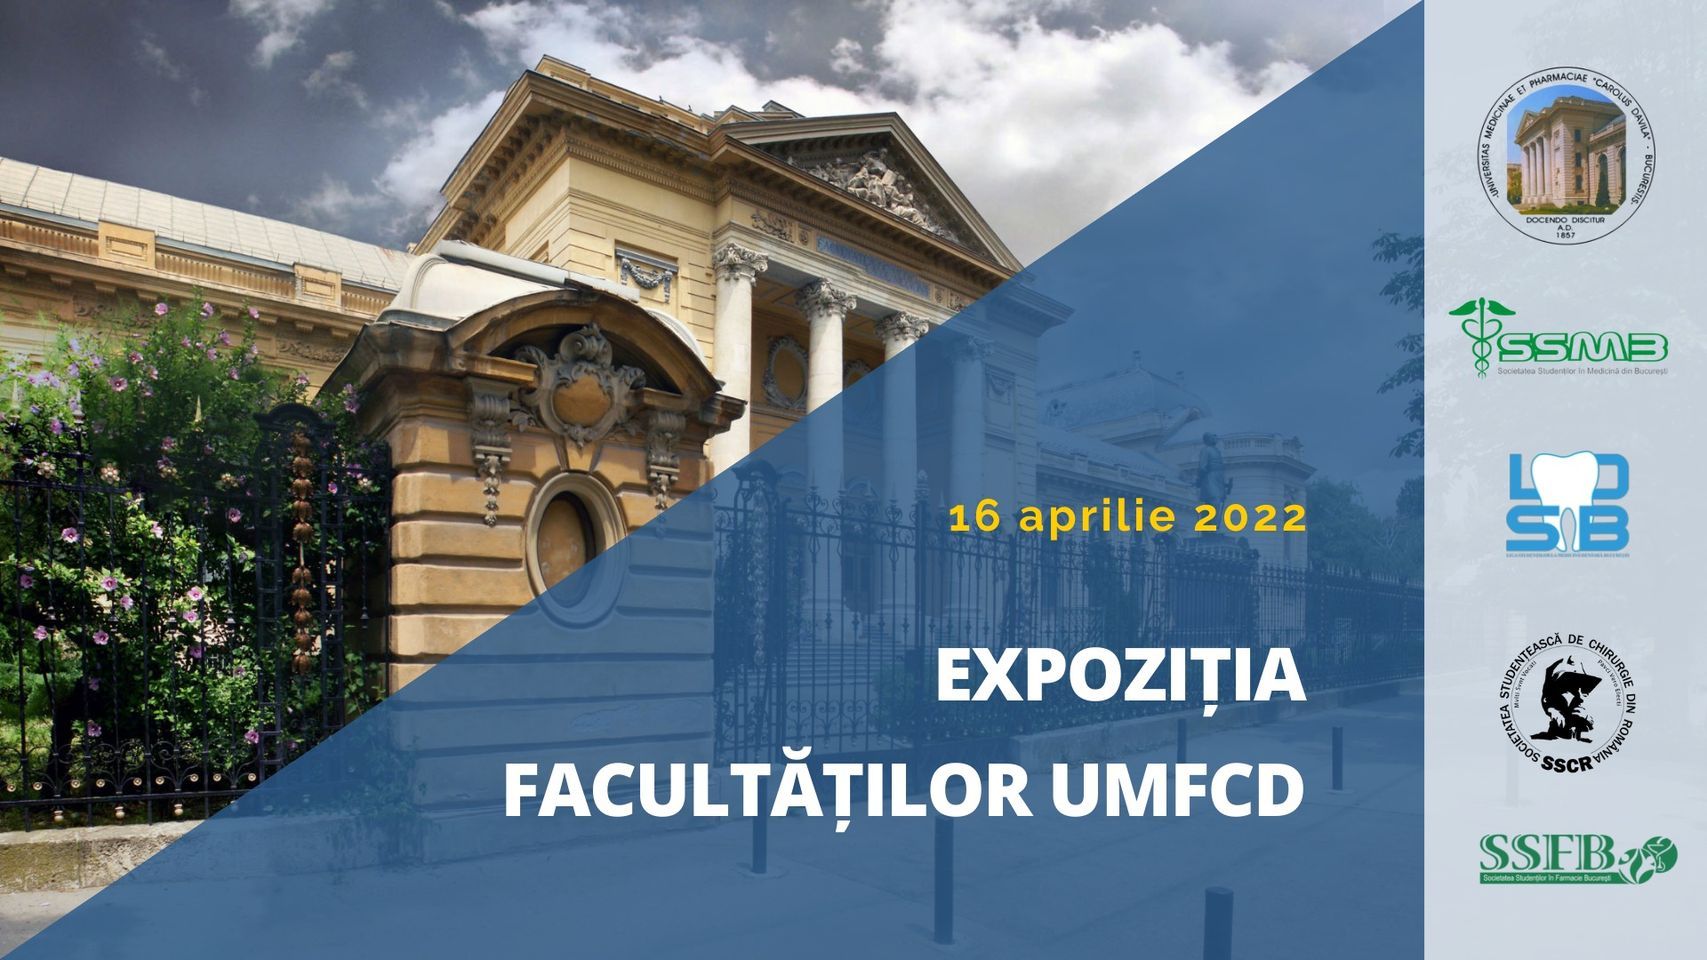 Expoziția Facultăților UMFCD, organizată online pentru liceenii interesați de medicină